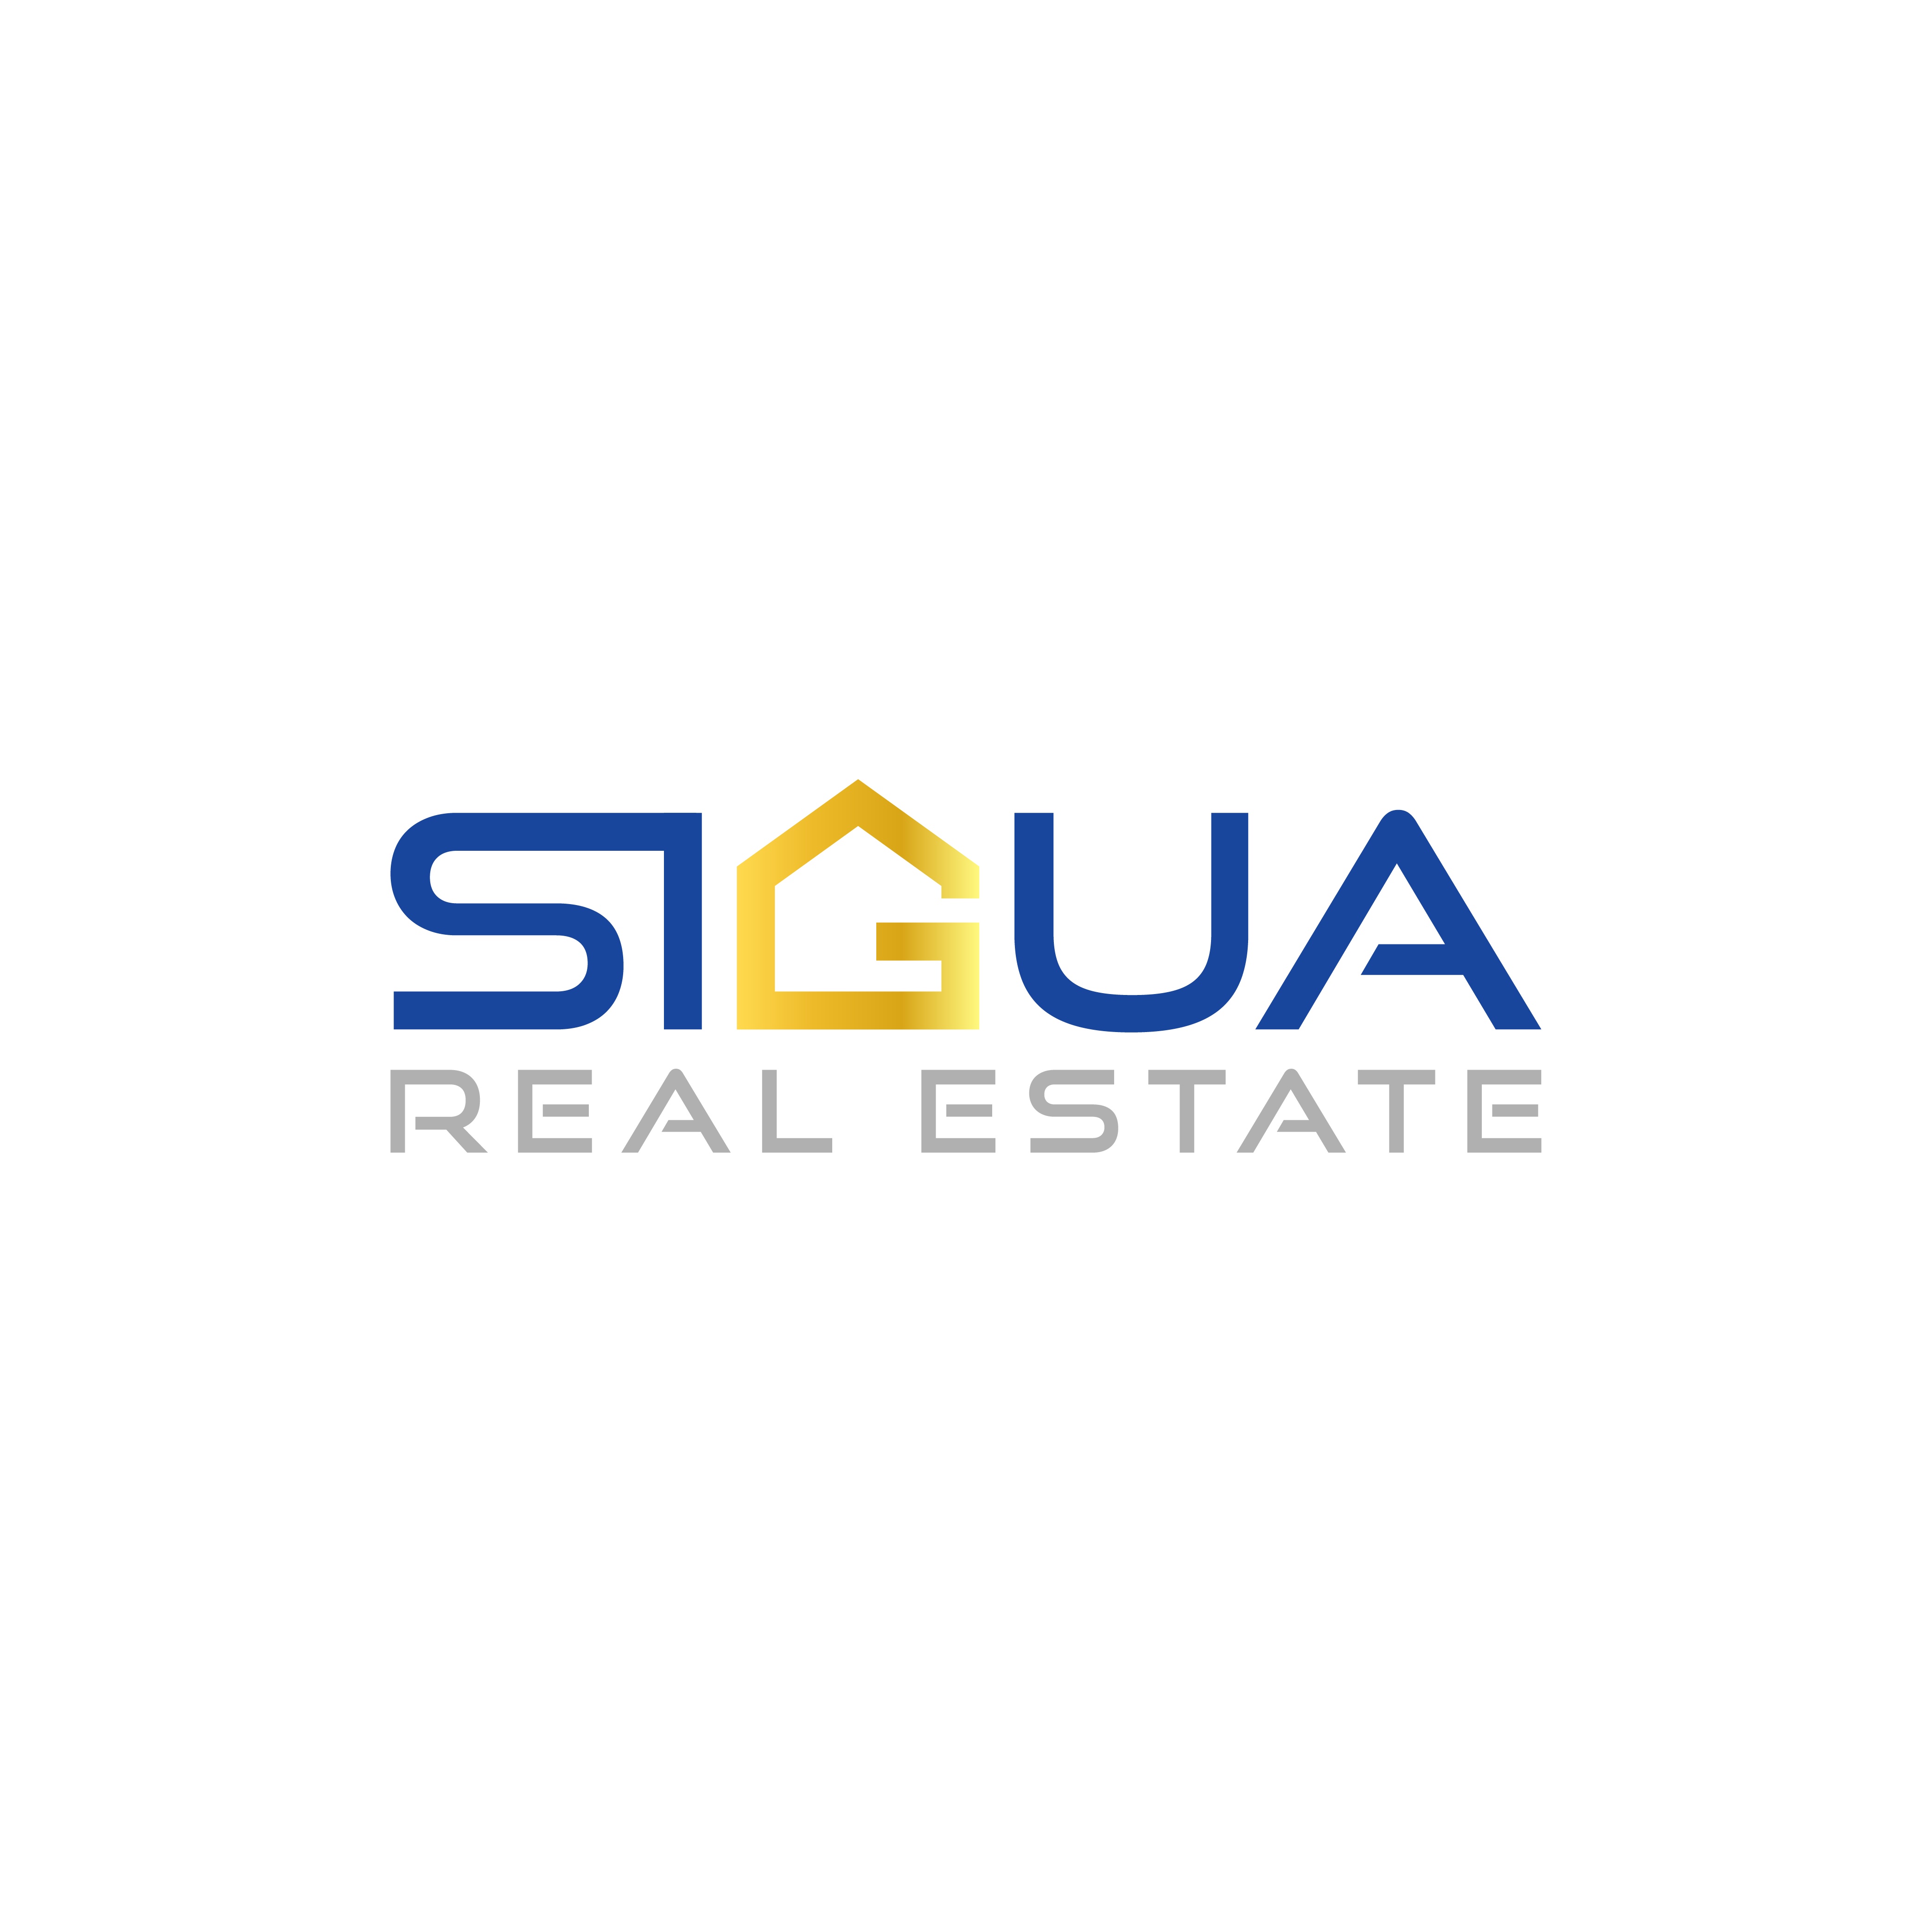 Sigua Real Estate